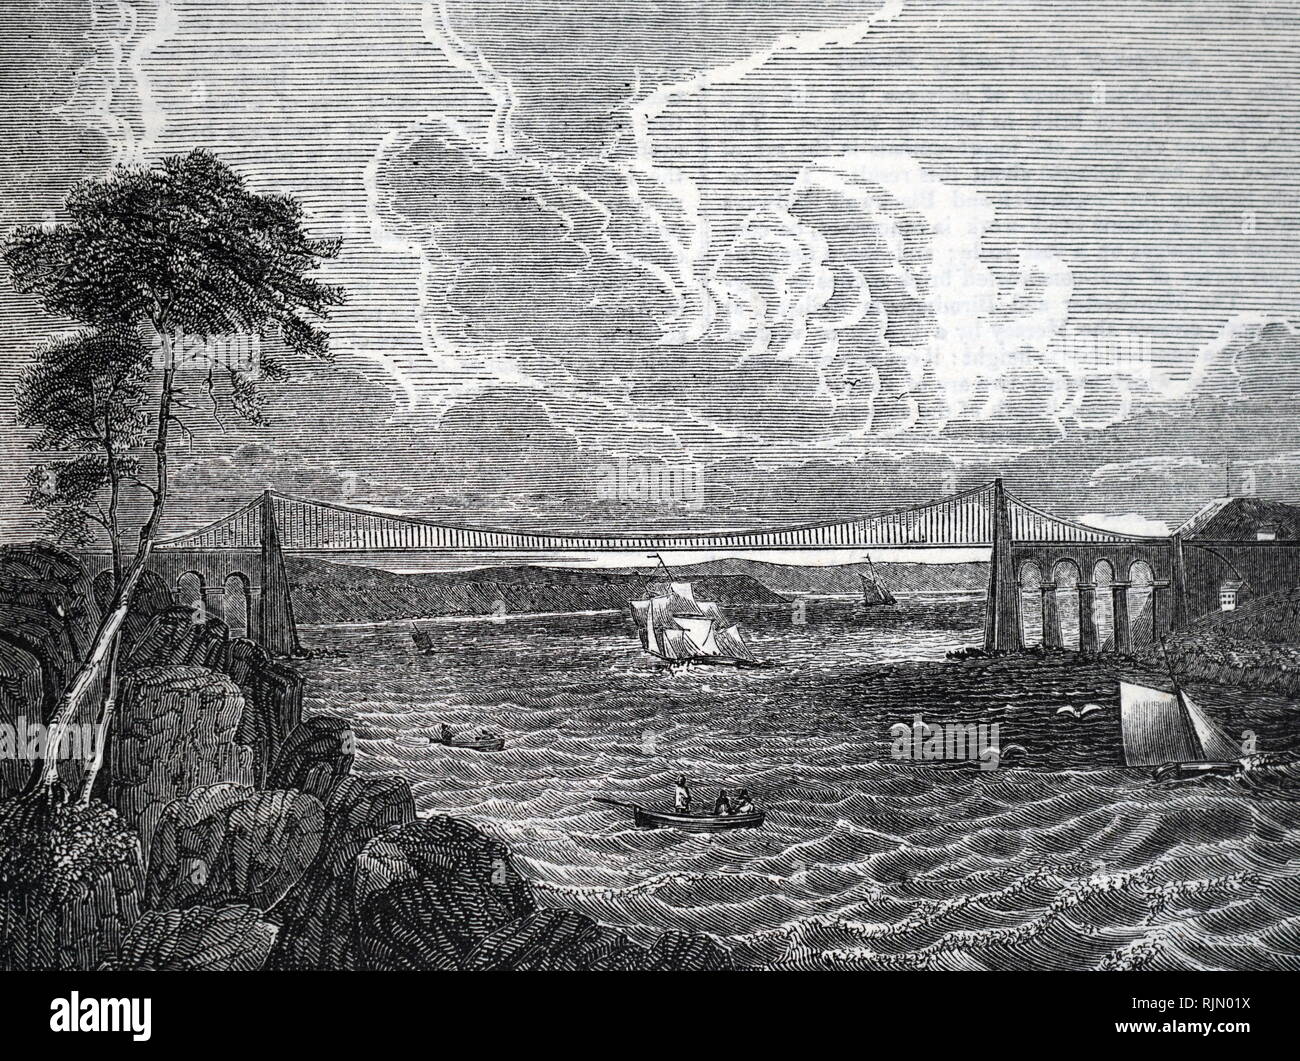 Illustration du pont suspendu de Menai de Telford. Détail d'un grand journal sans date. Banque D'Images